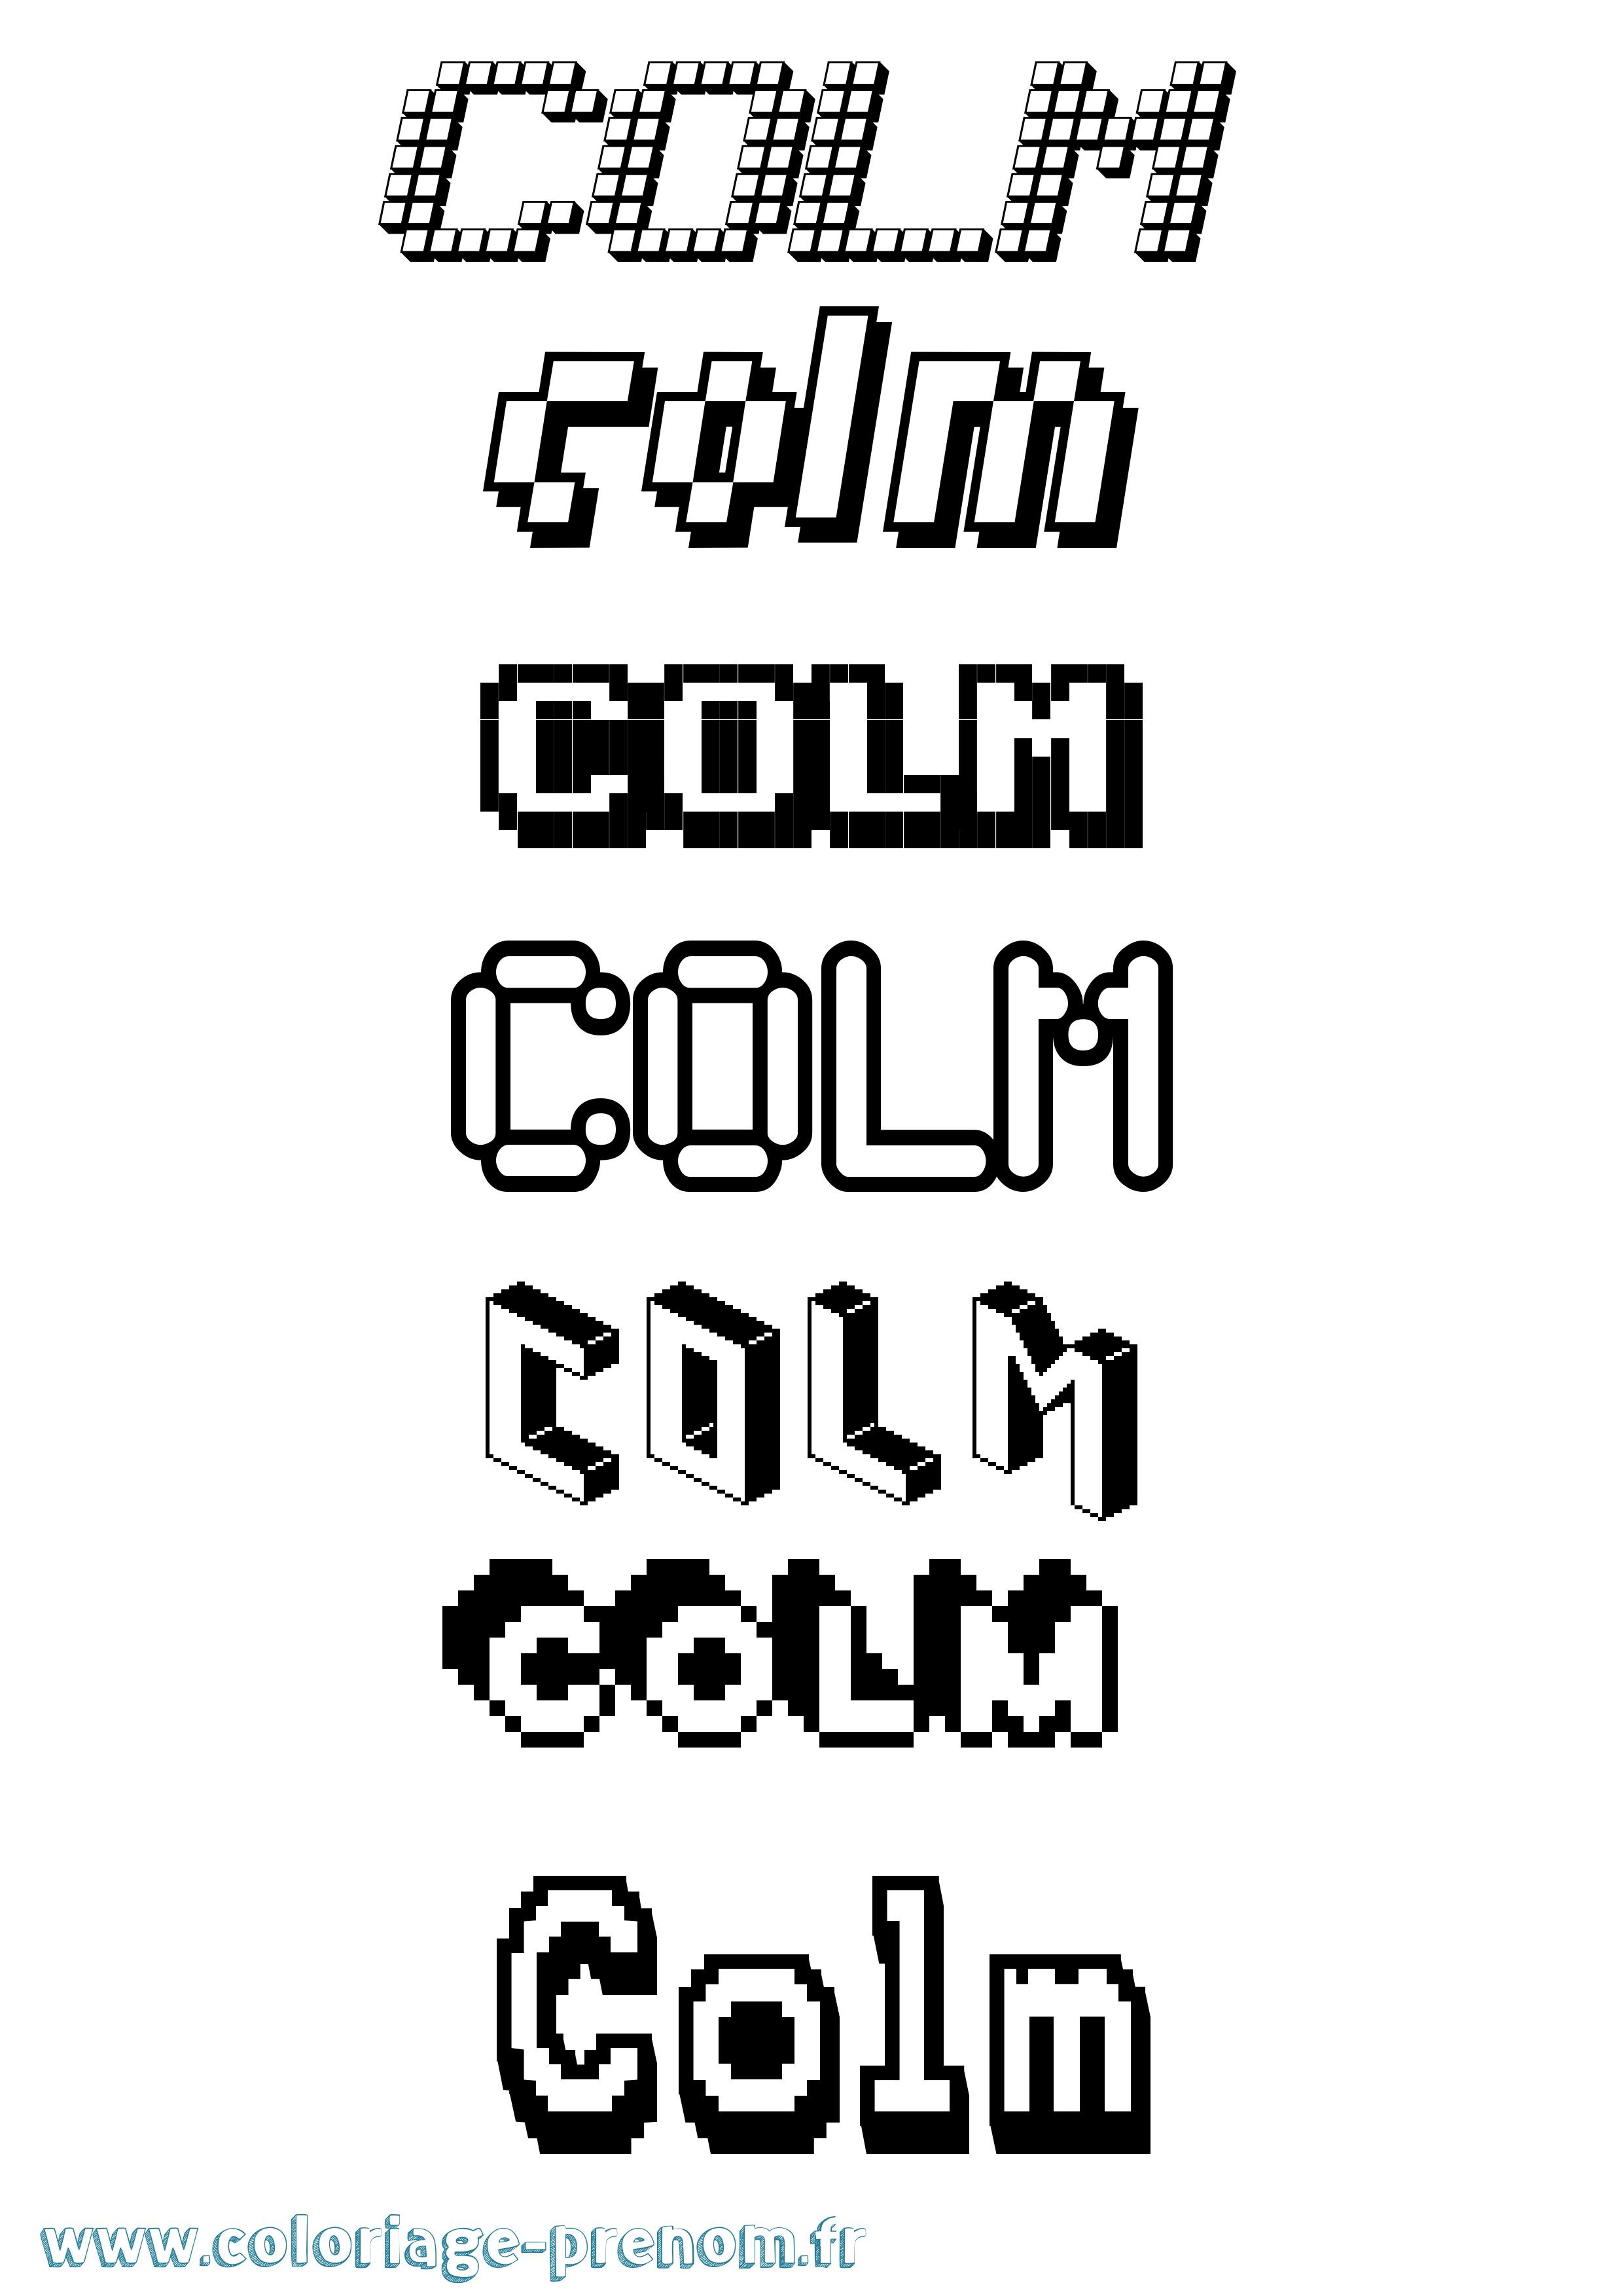 Coloriage prénom Colm Pixel